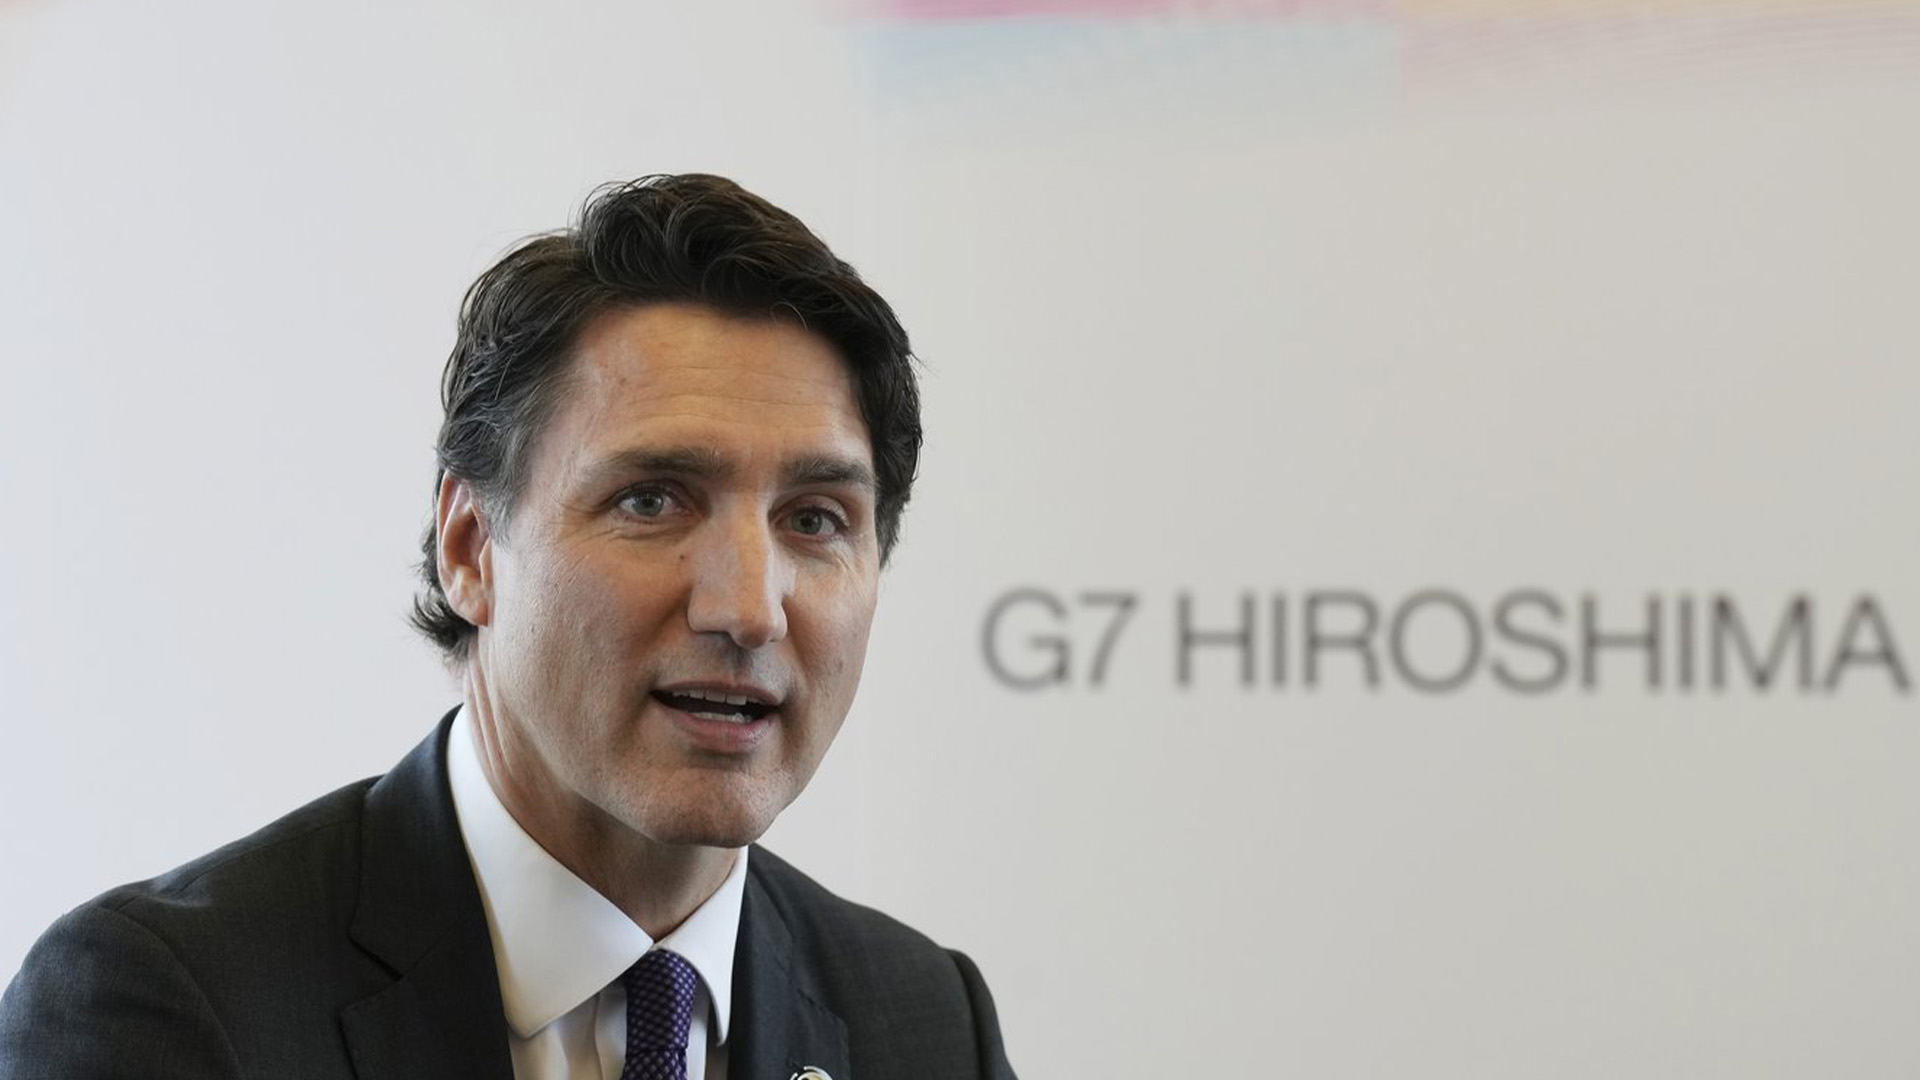 Il Canada si è unito ad altri paesi del G7 nell’imporre ulteriori sanzioni alla Russia